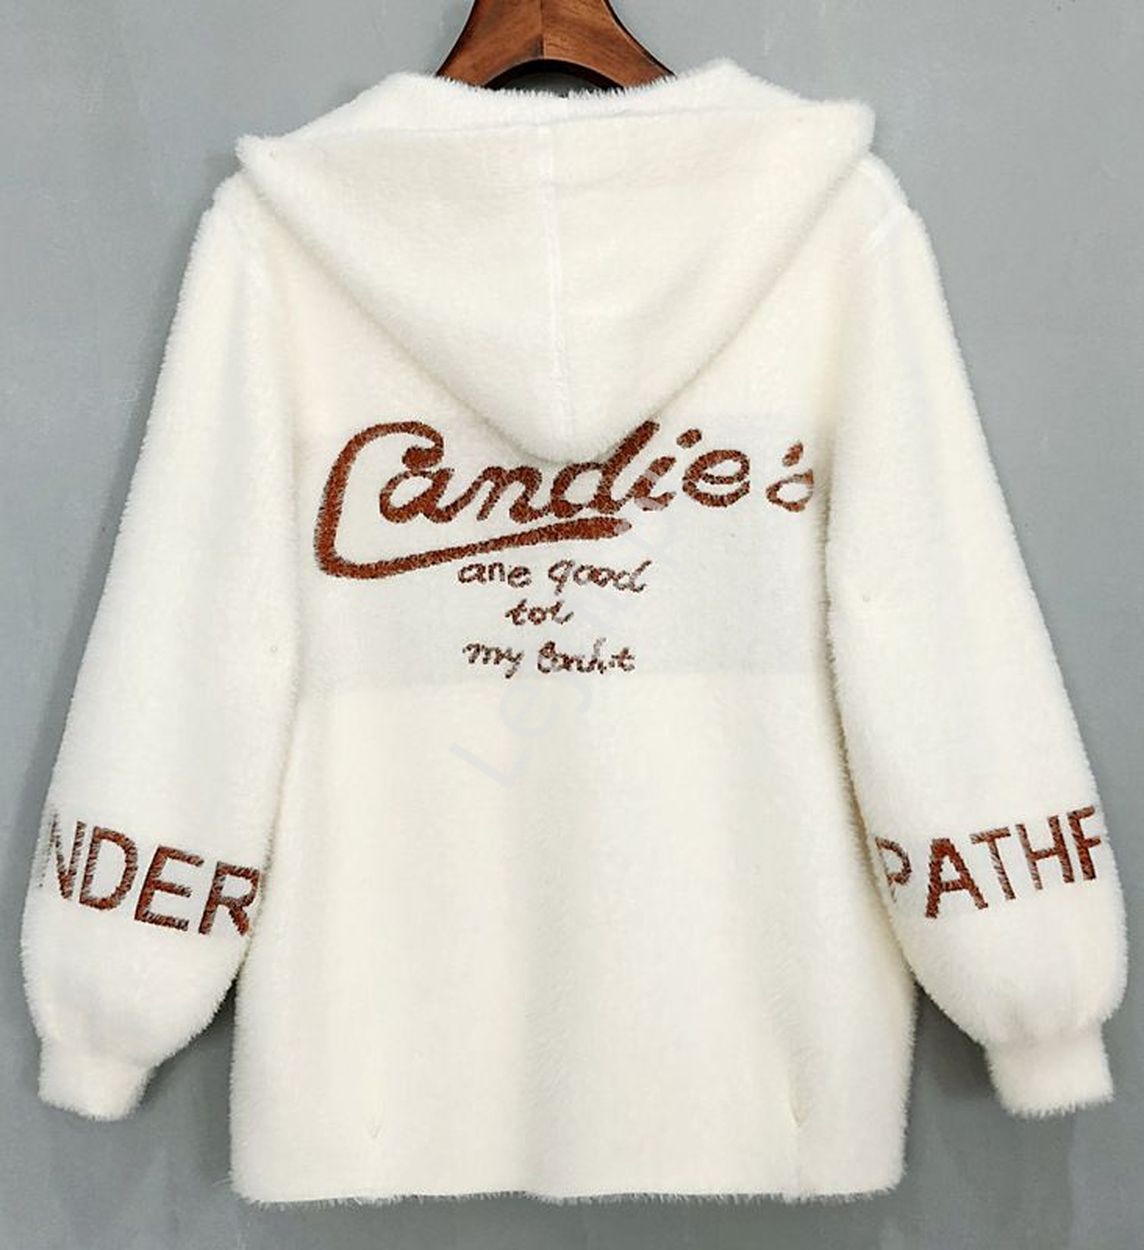 Biało kremowa kurtka z kapturem, sztuczna alpaka zapinana, z napisem Candies